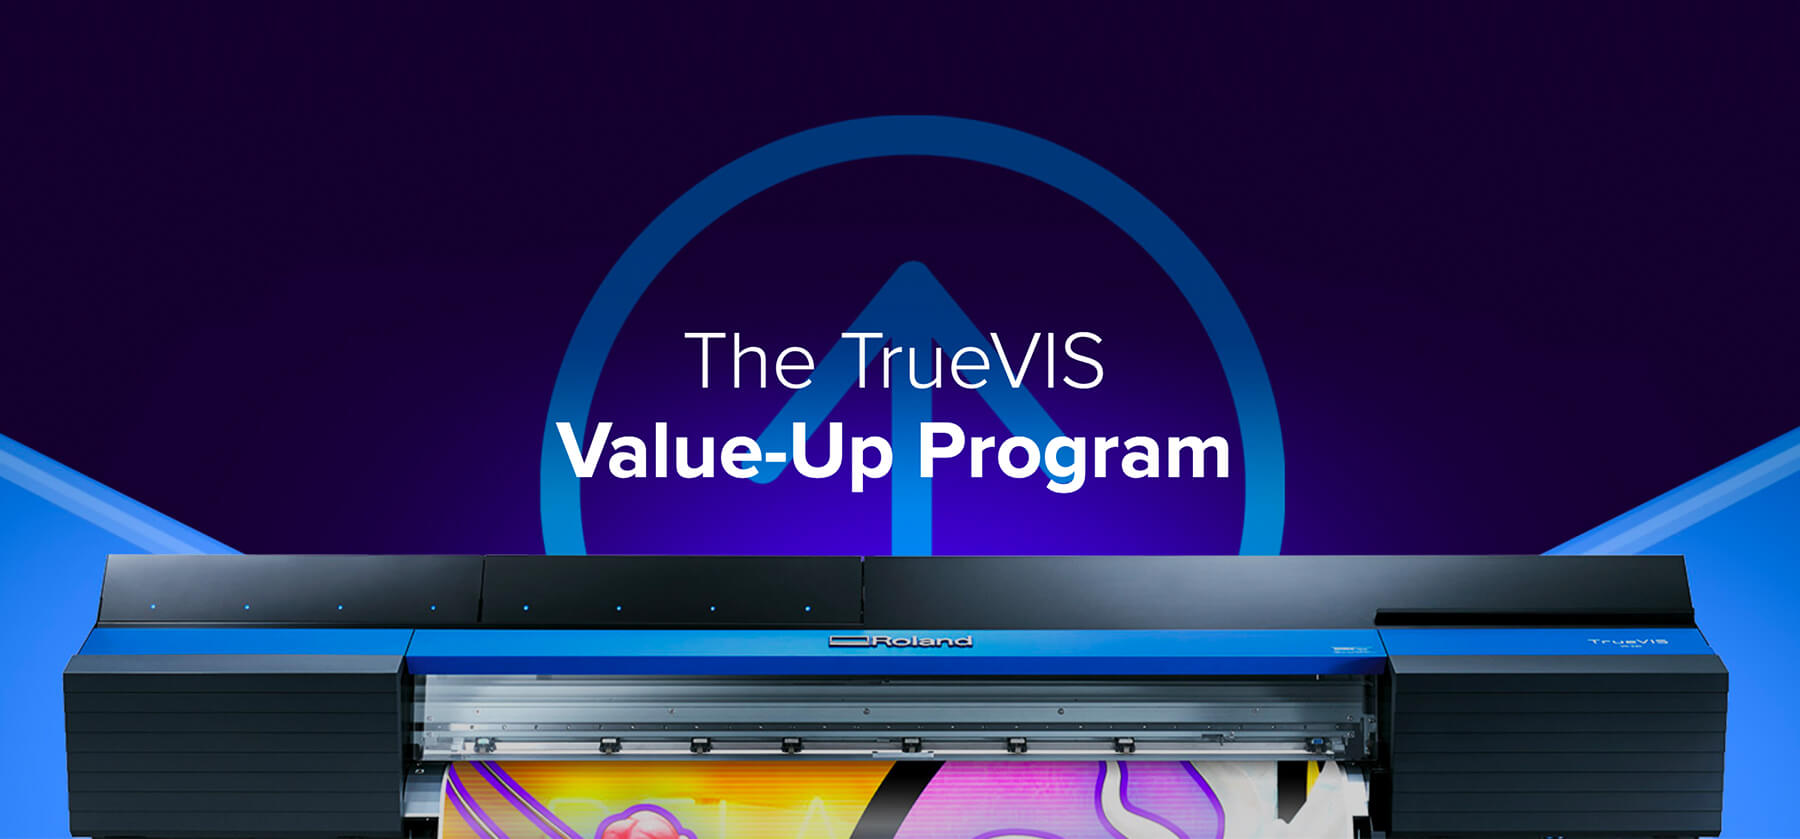 Roland DGA Launches New TrueVIS Value-Up Program